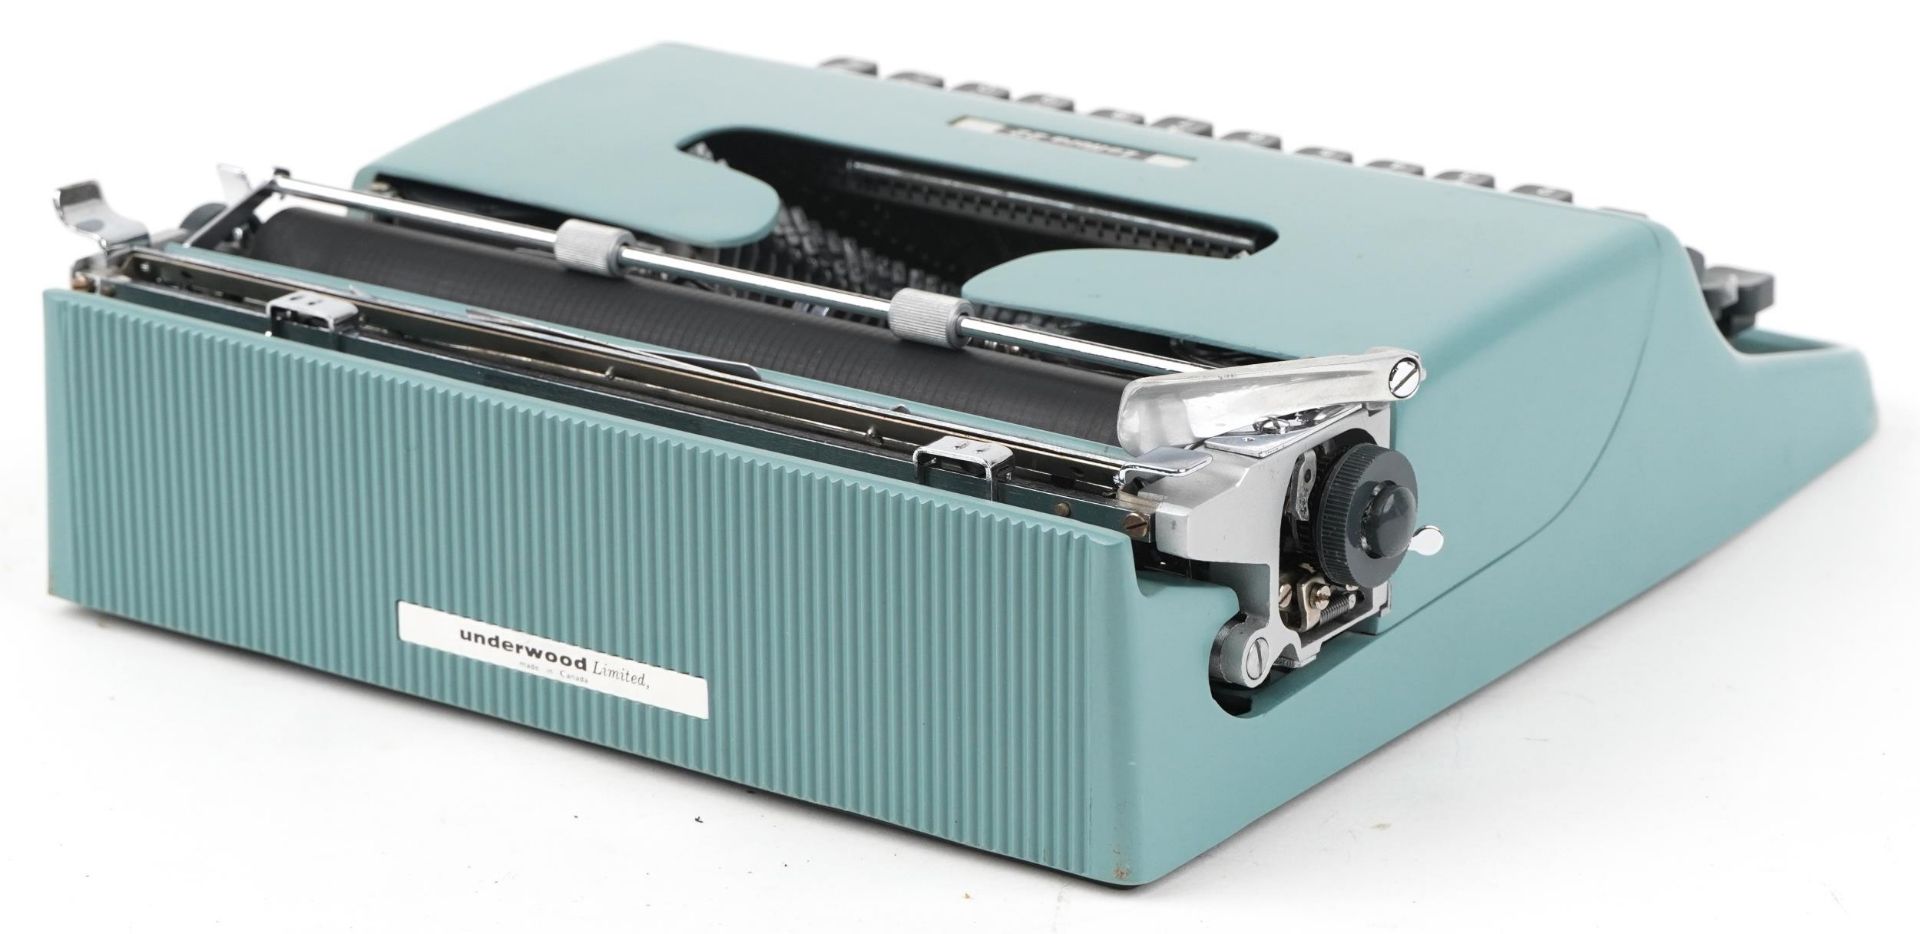 Vintage Lettera 22 portable typewriter with case - Bild 3 aus 4